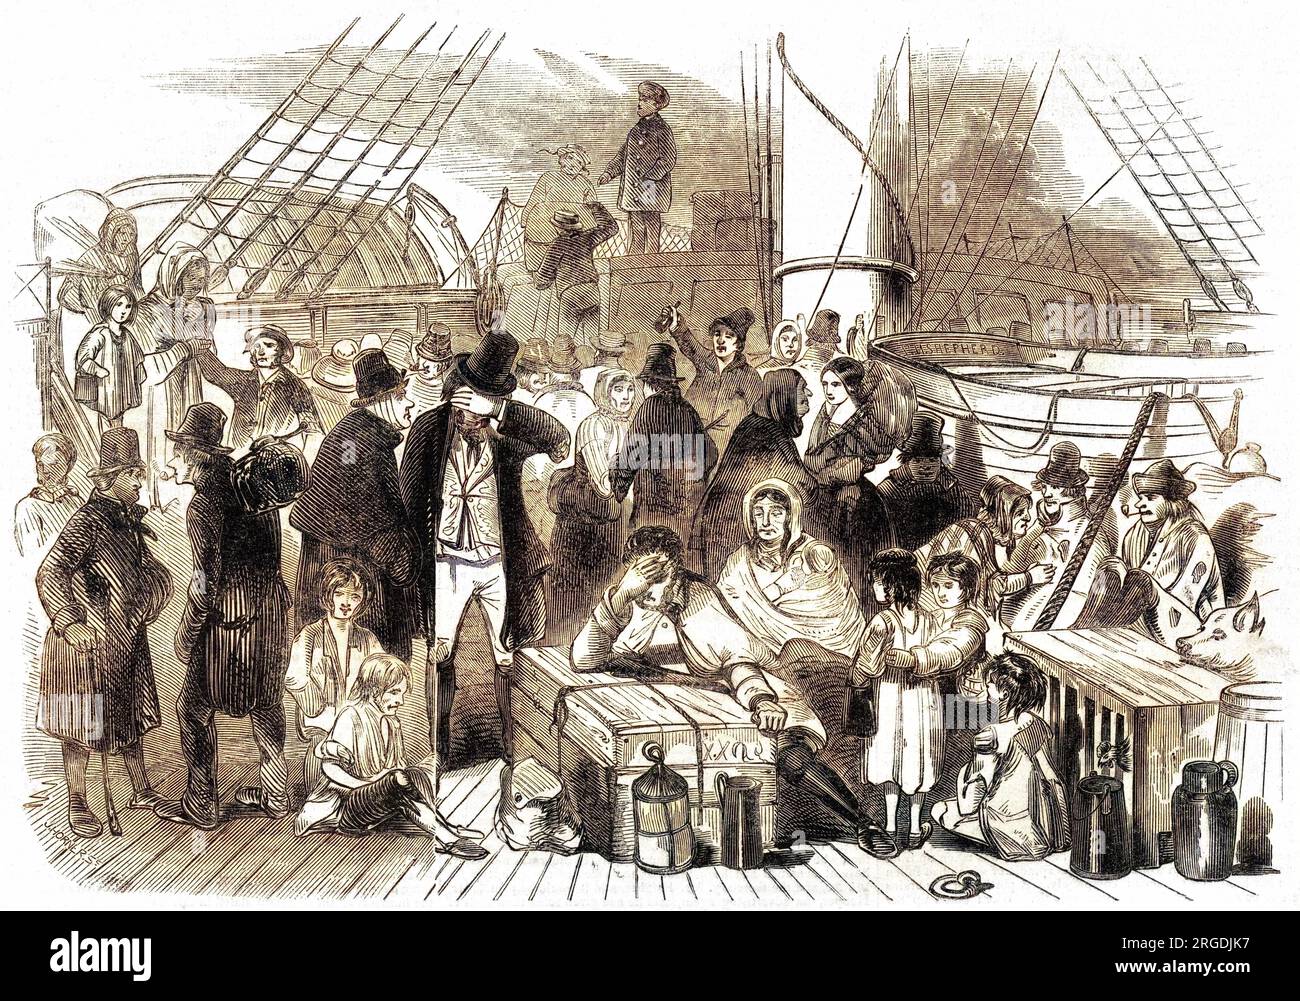 Irische Emigranten auf dem Deck eines Schiffes. Das Bild wird veröffentlicht mit Bezug auf eine schreckliche Kollision auf der Mersey zwischen zwei Dampfern, der Sea Nymph und dem Rambler, die zu einem gewaltigen Verlust von Menschenleben führte. Stockfoto